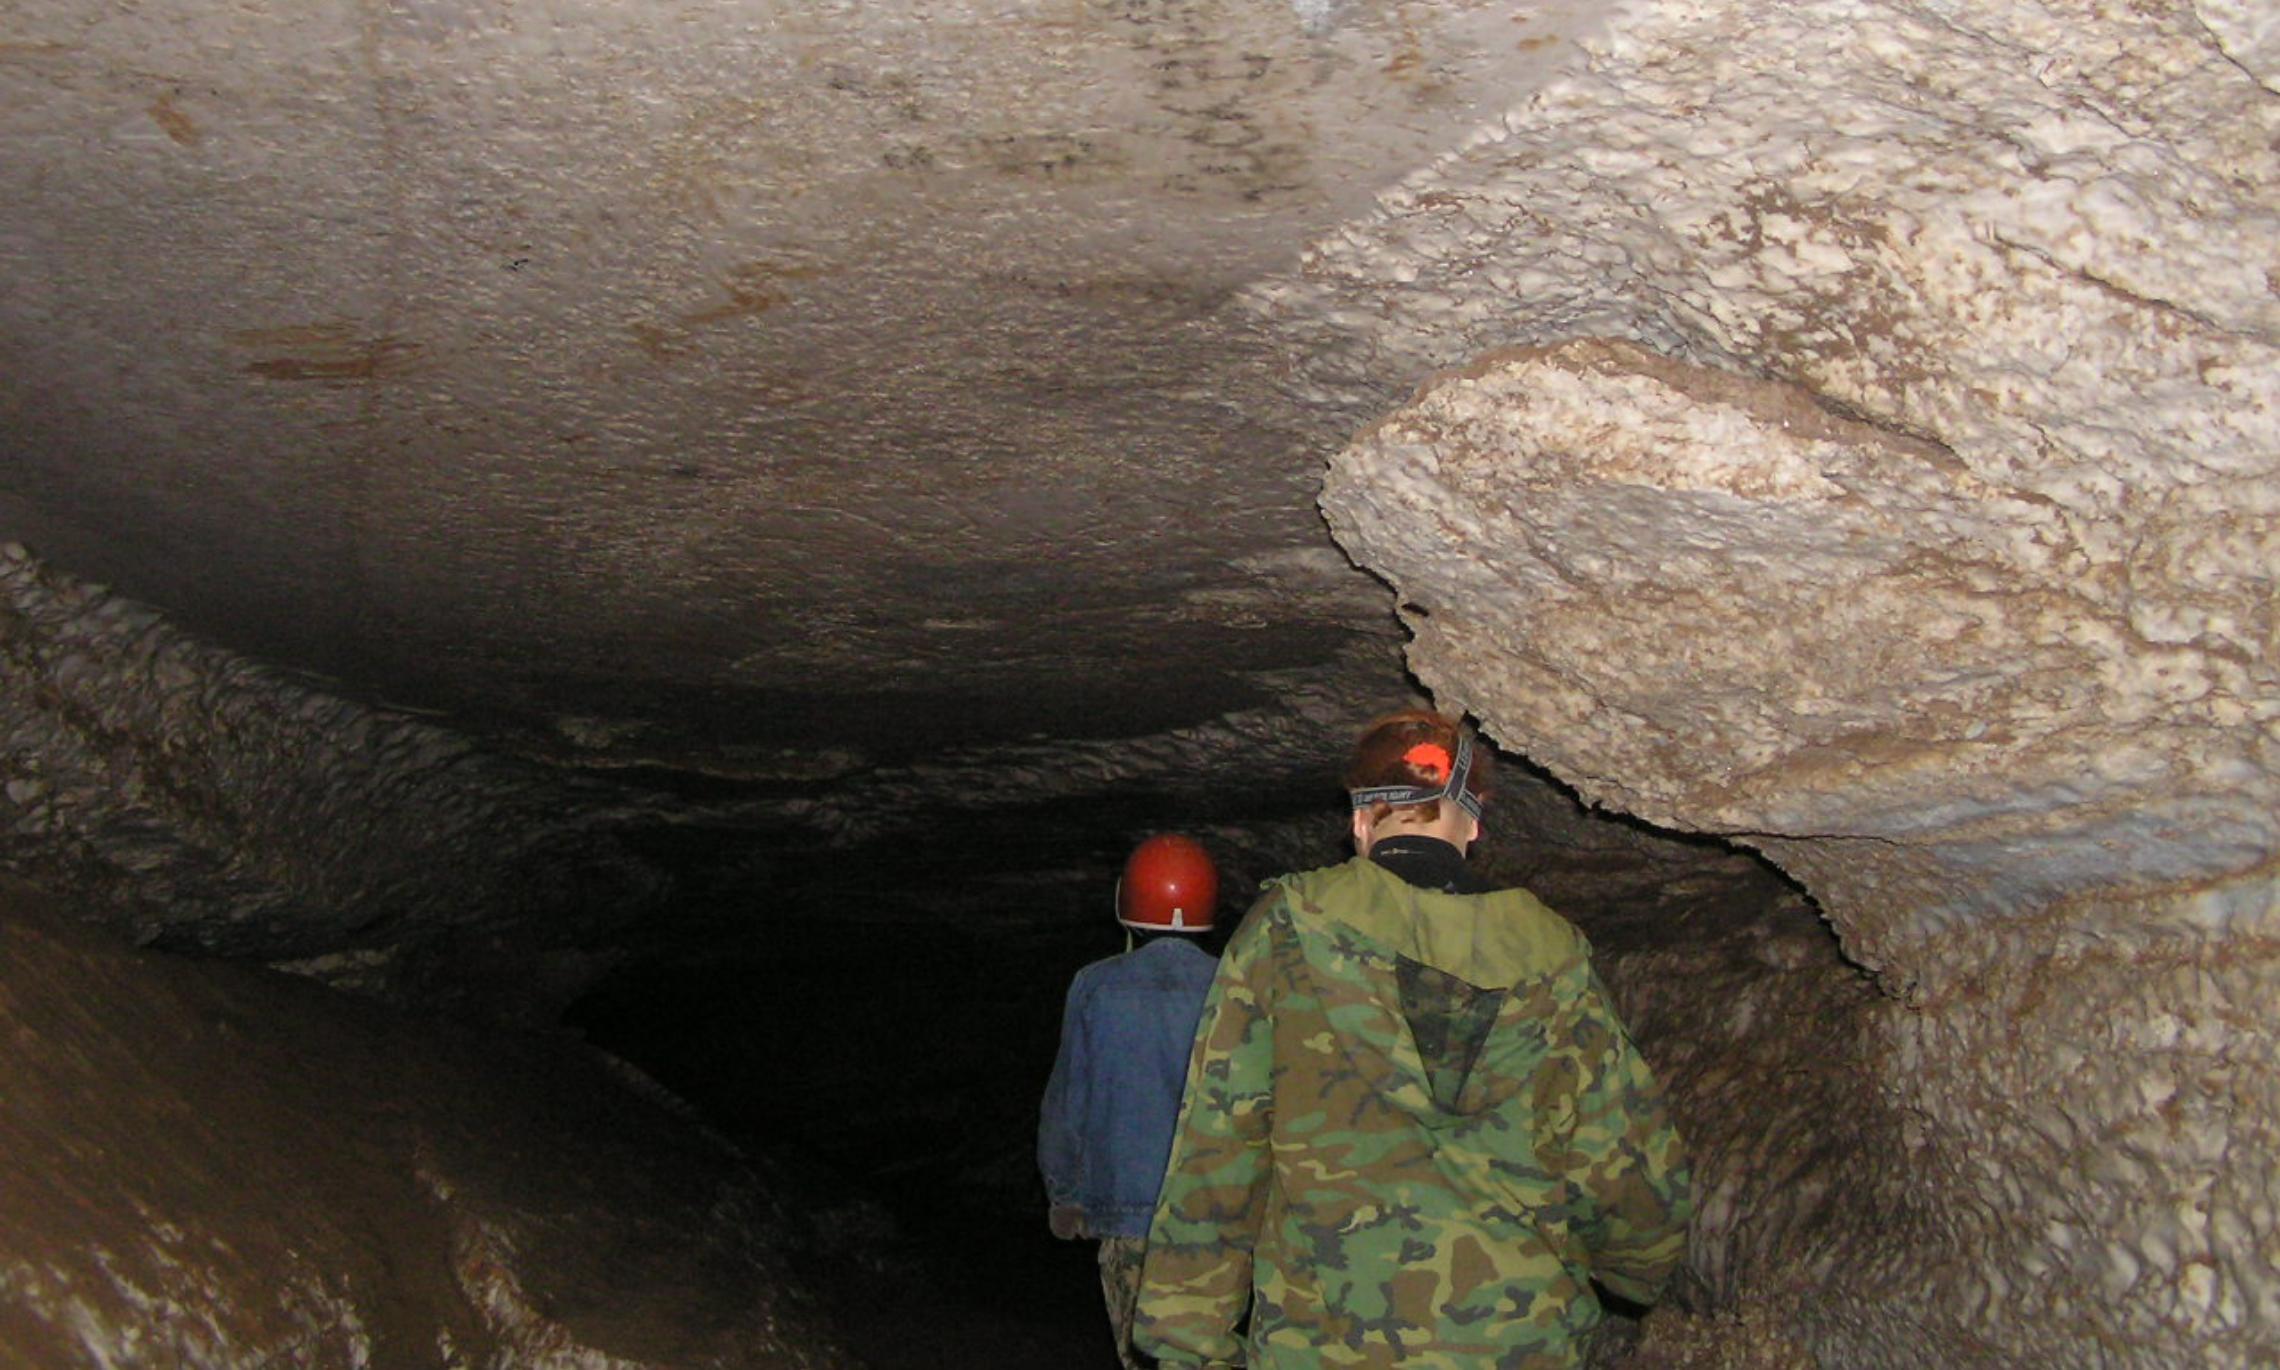 Пещера подходила для посещения туристами без специальной спелеологической подготовки